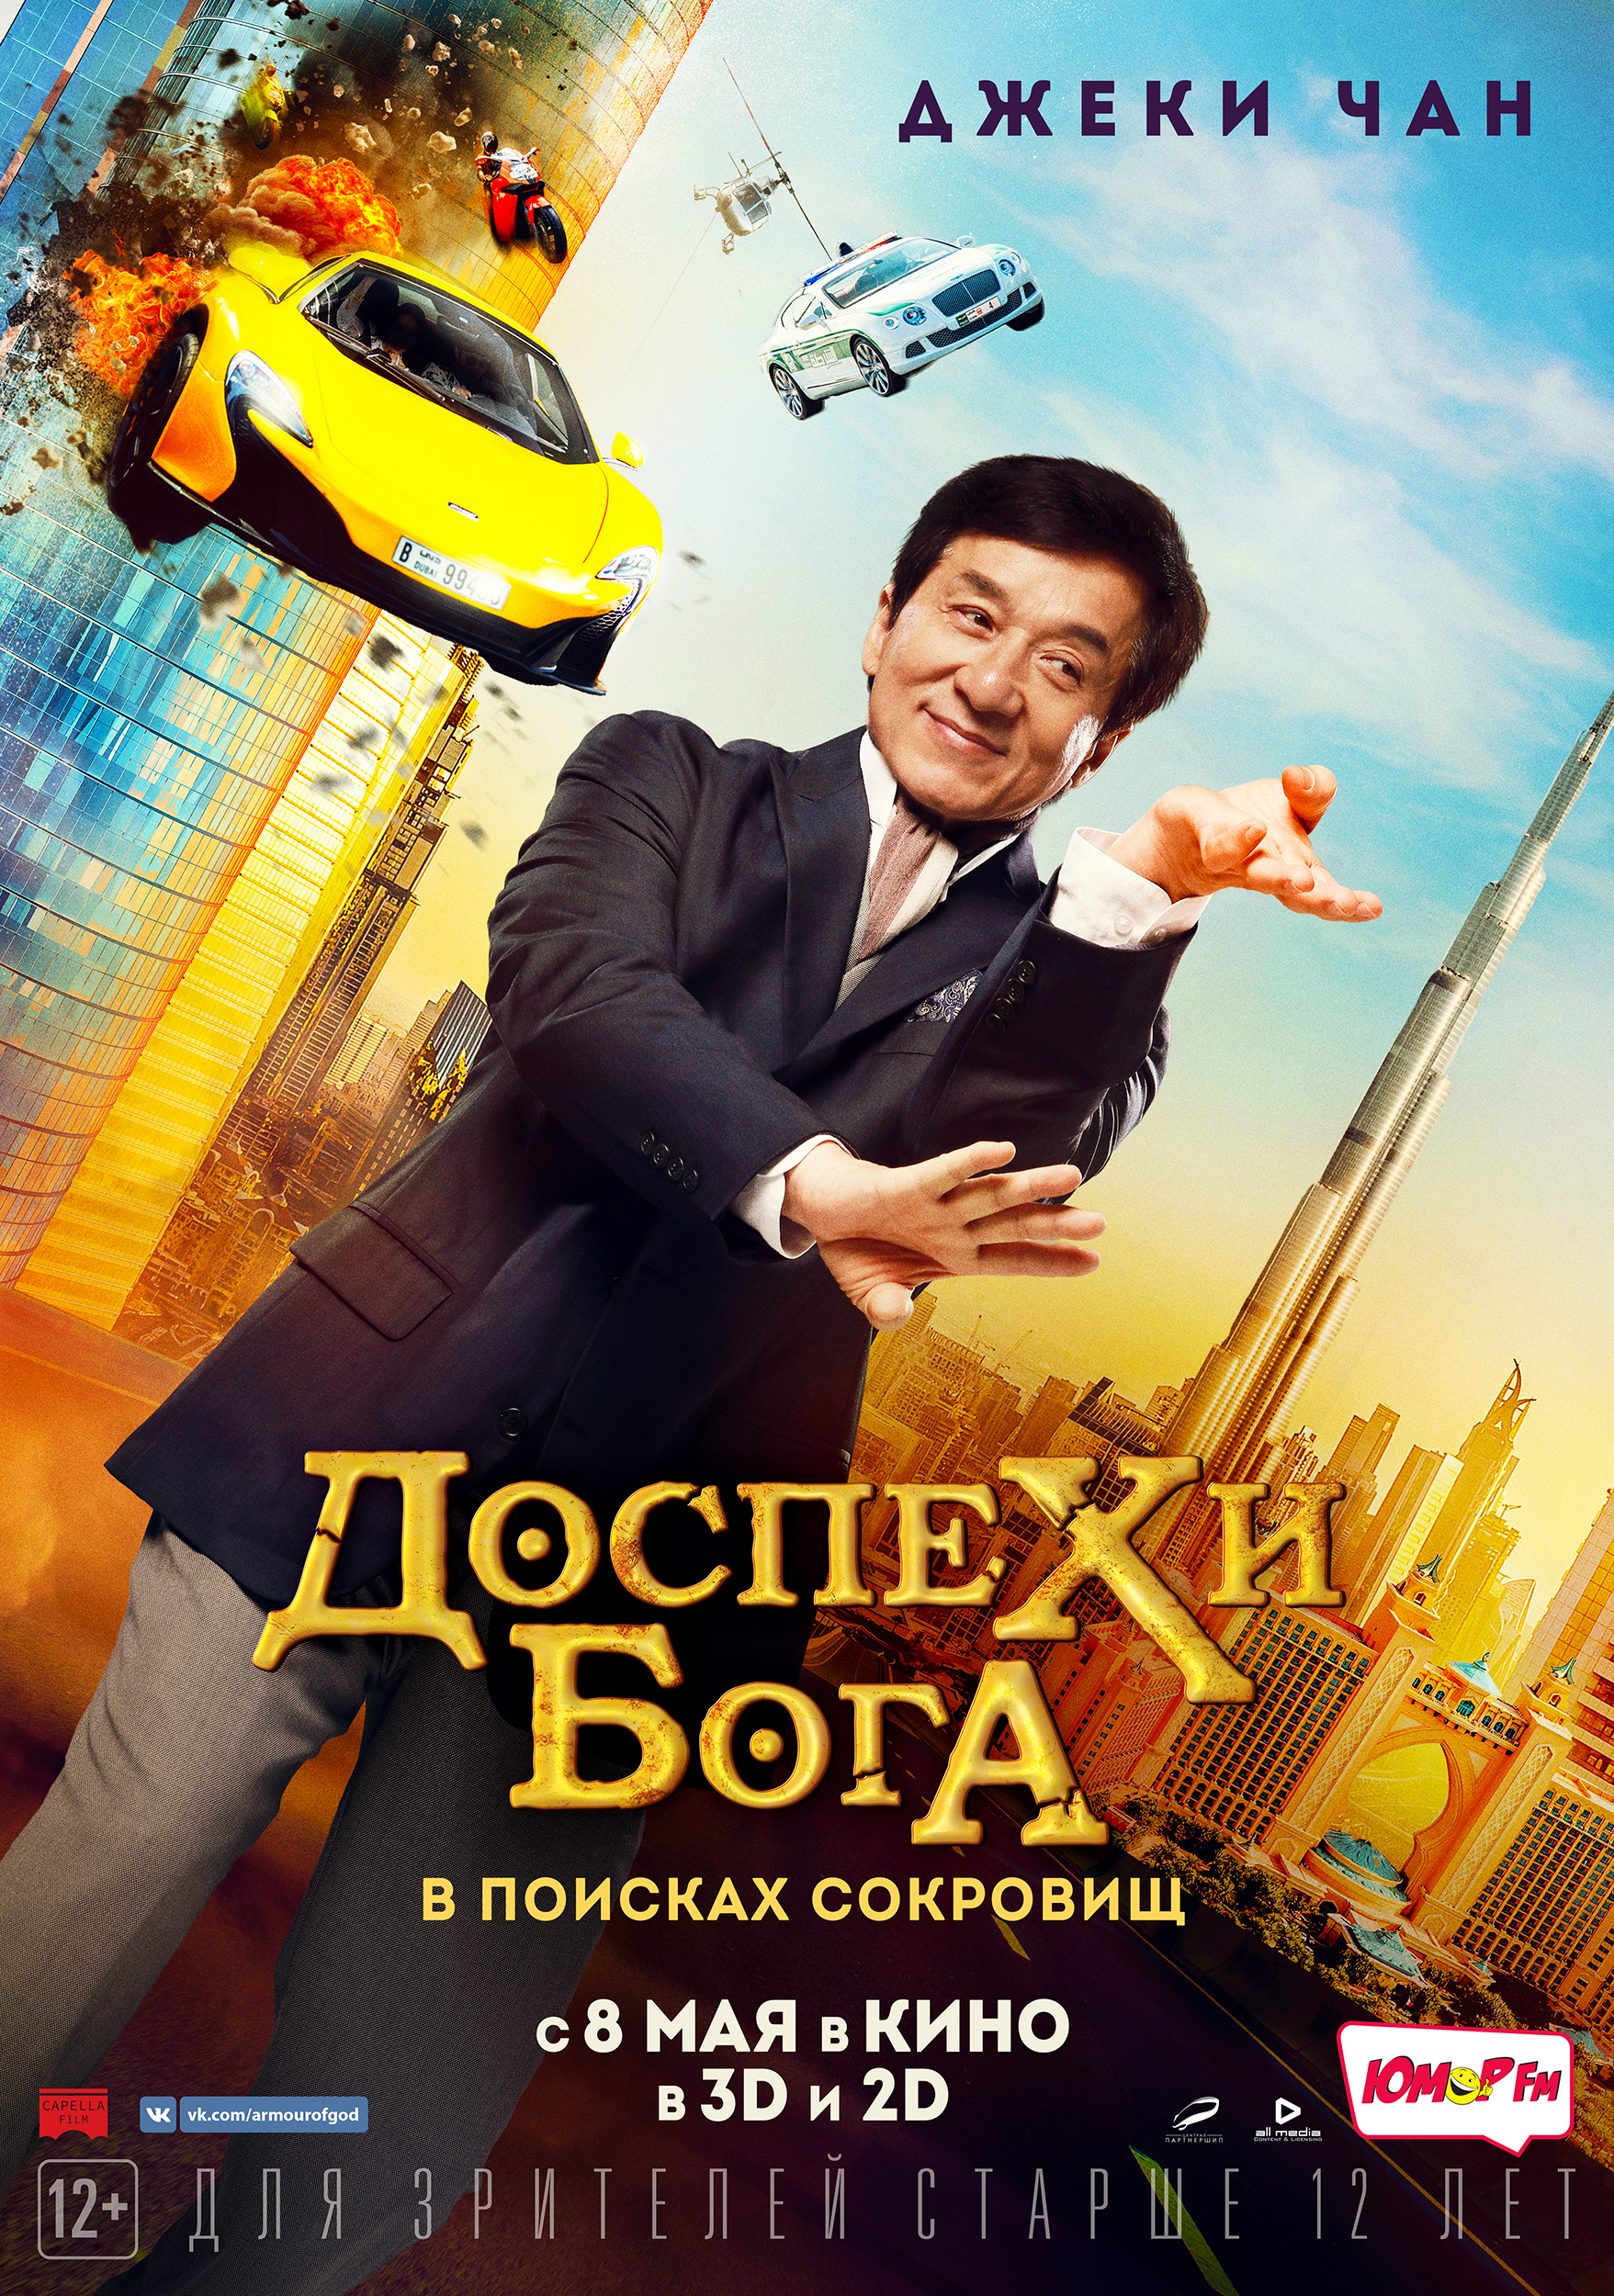 Русский трейлер экшен-комедии «Доспехи Бога» с Джеки Чаном